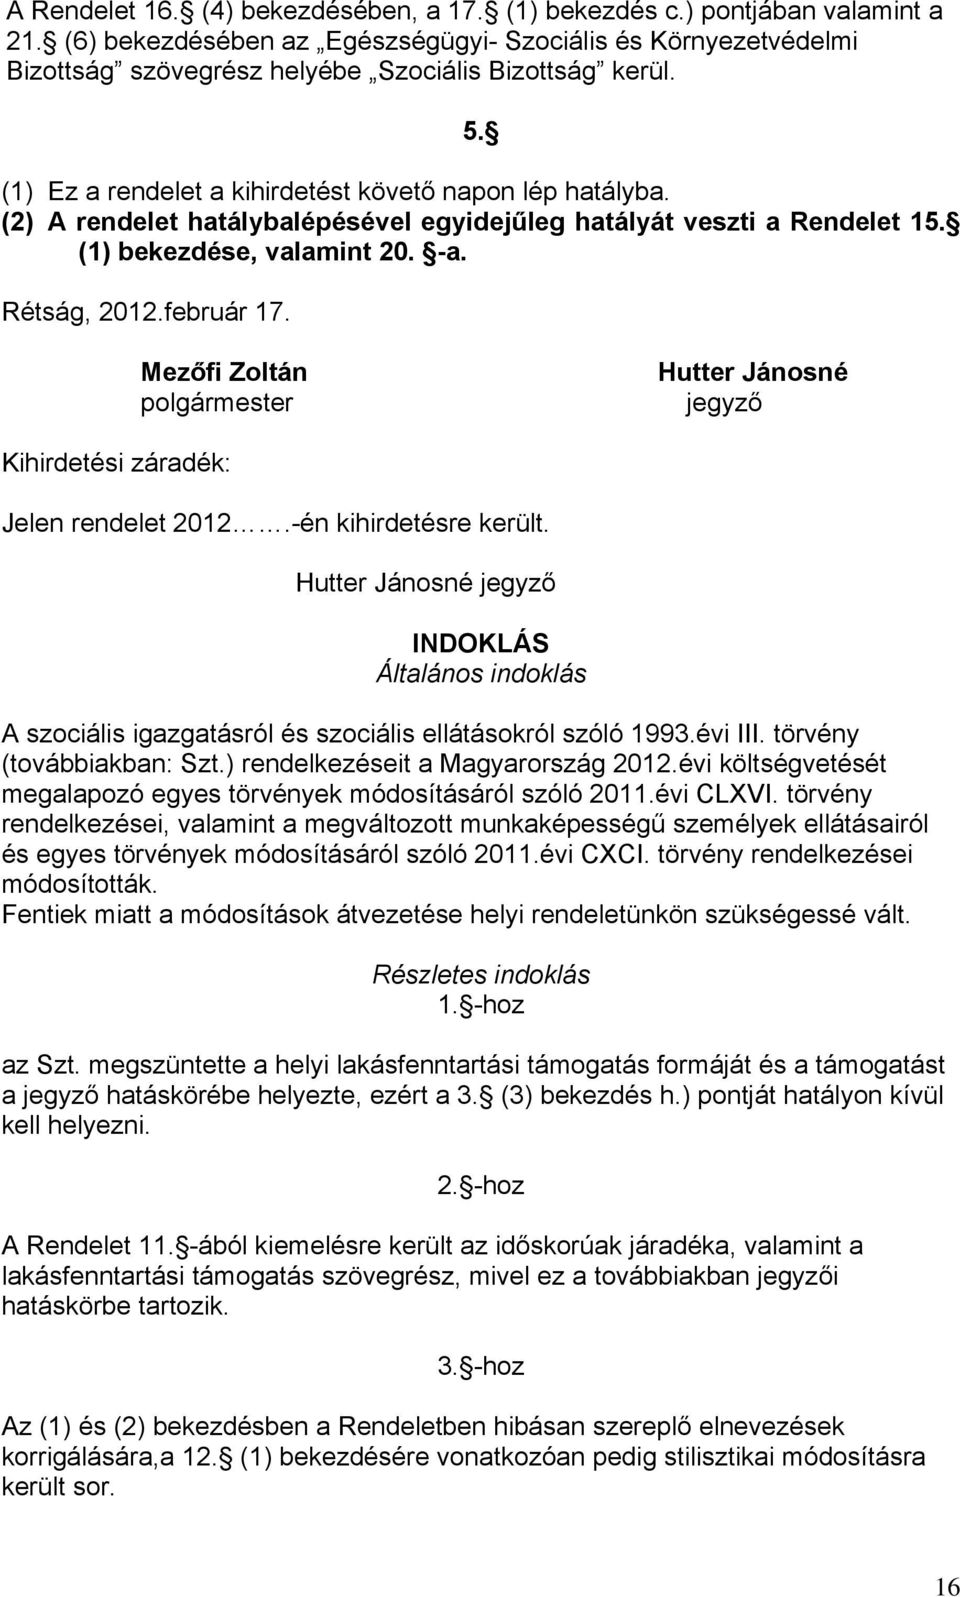 Mezőfi Zoltán polgármester Hutter Jánosné jegyző Kihirdetési záradék: Jelen rendelet 2012.-én kihirdetésre került.